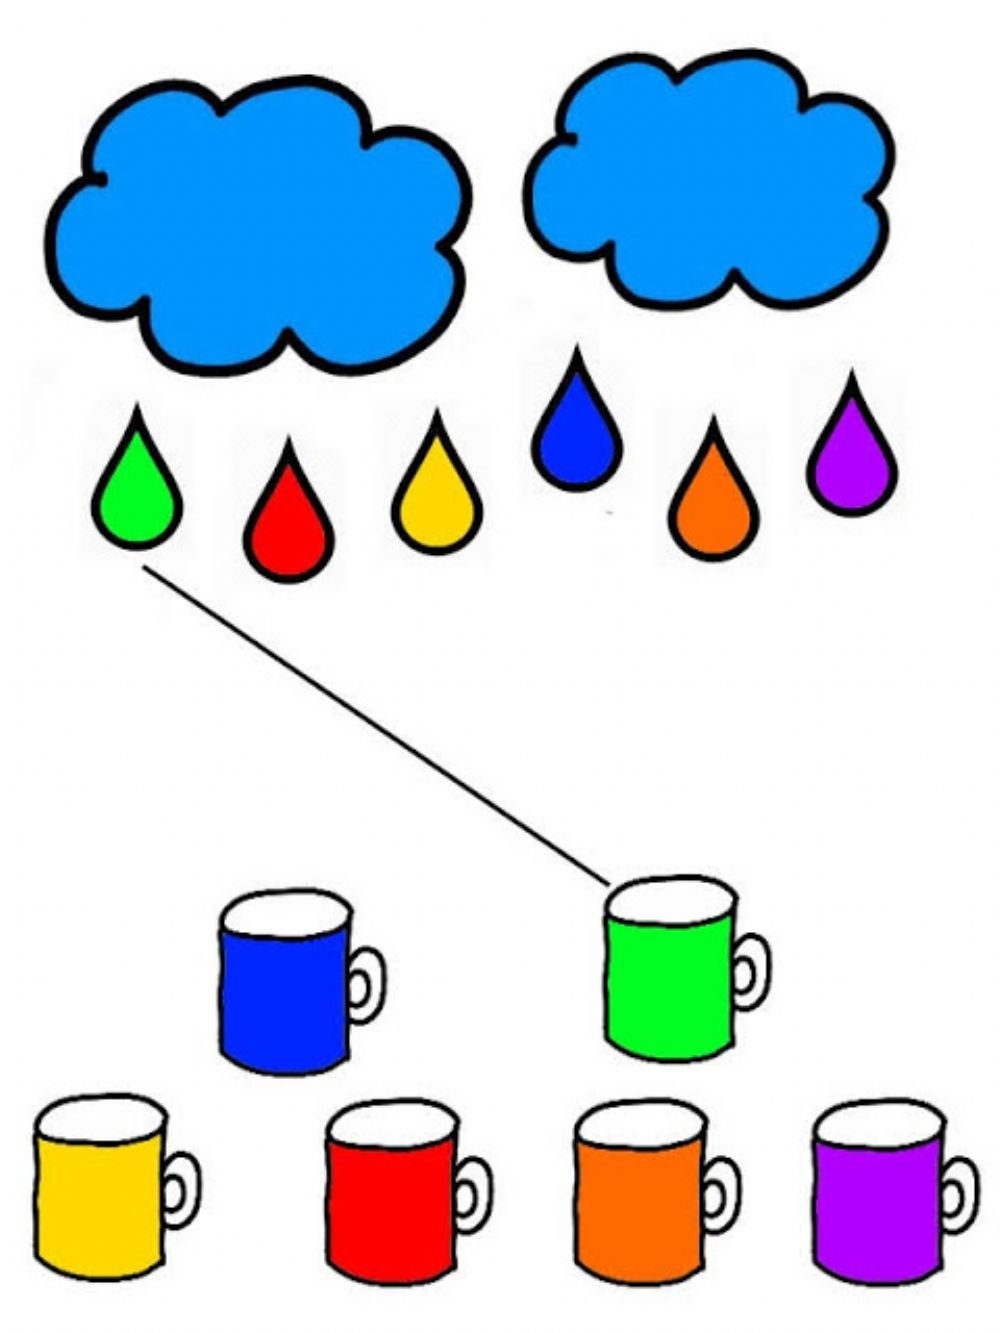 Занятия учим цвета. Цвета задания для детей. Задания для детей цветные. Задания на цвета для дошкольников. Задания для малышей цве а.